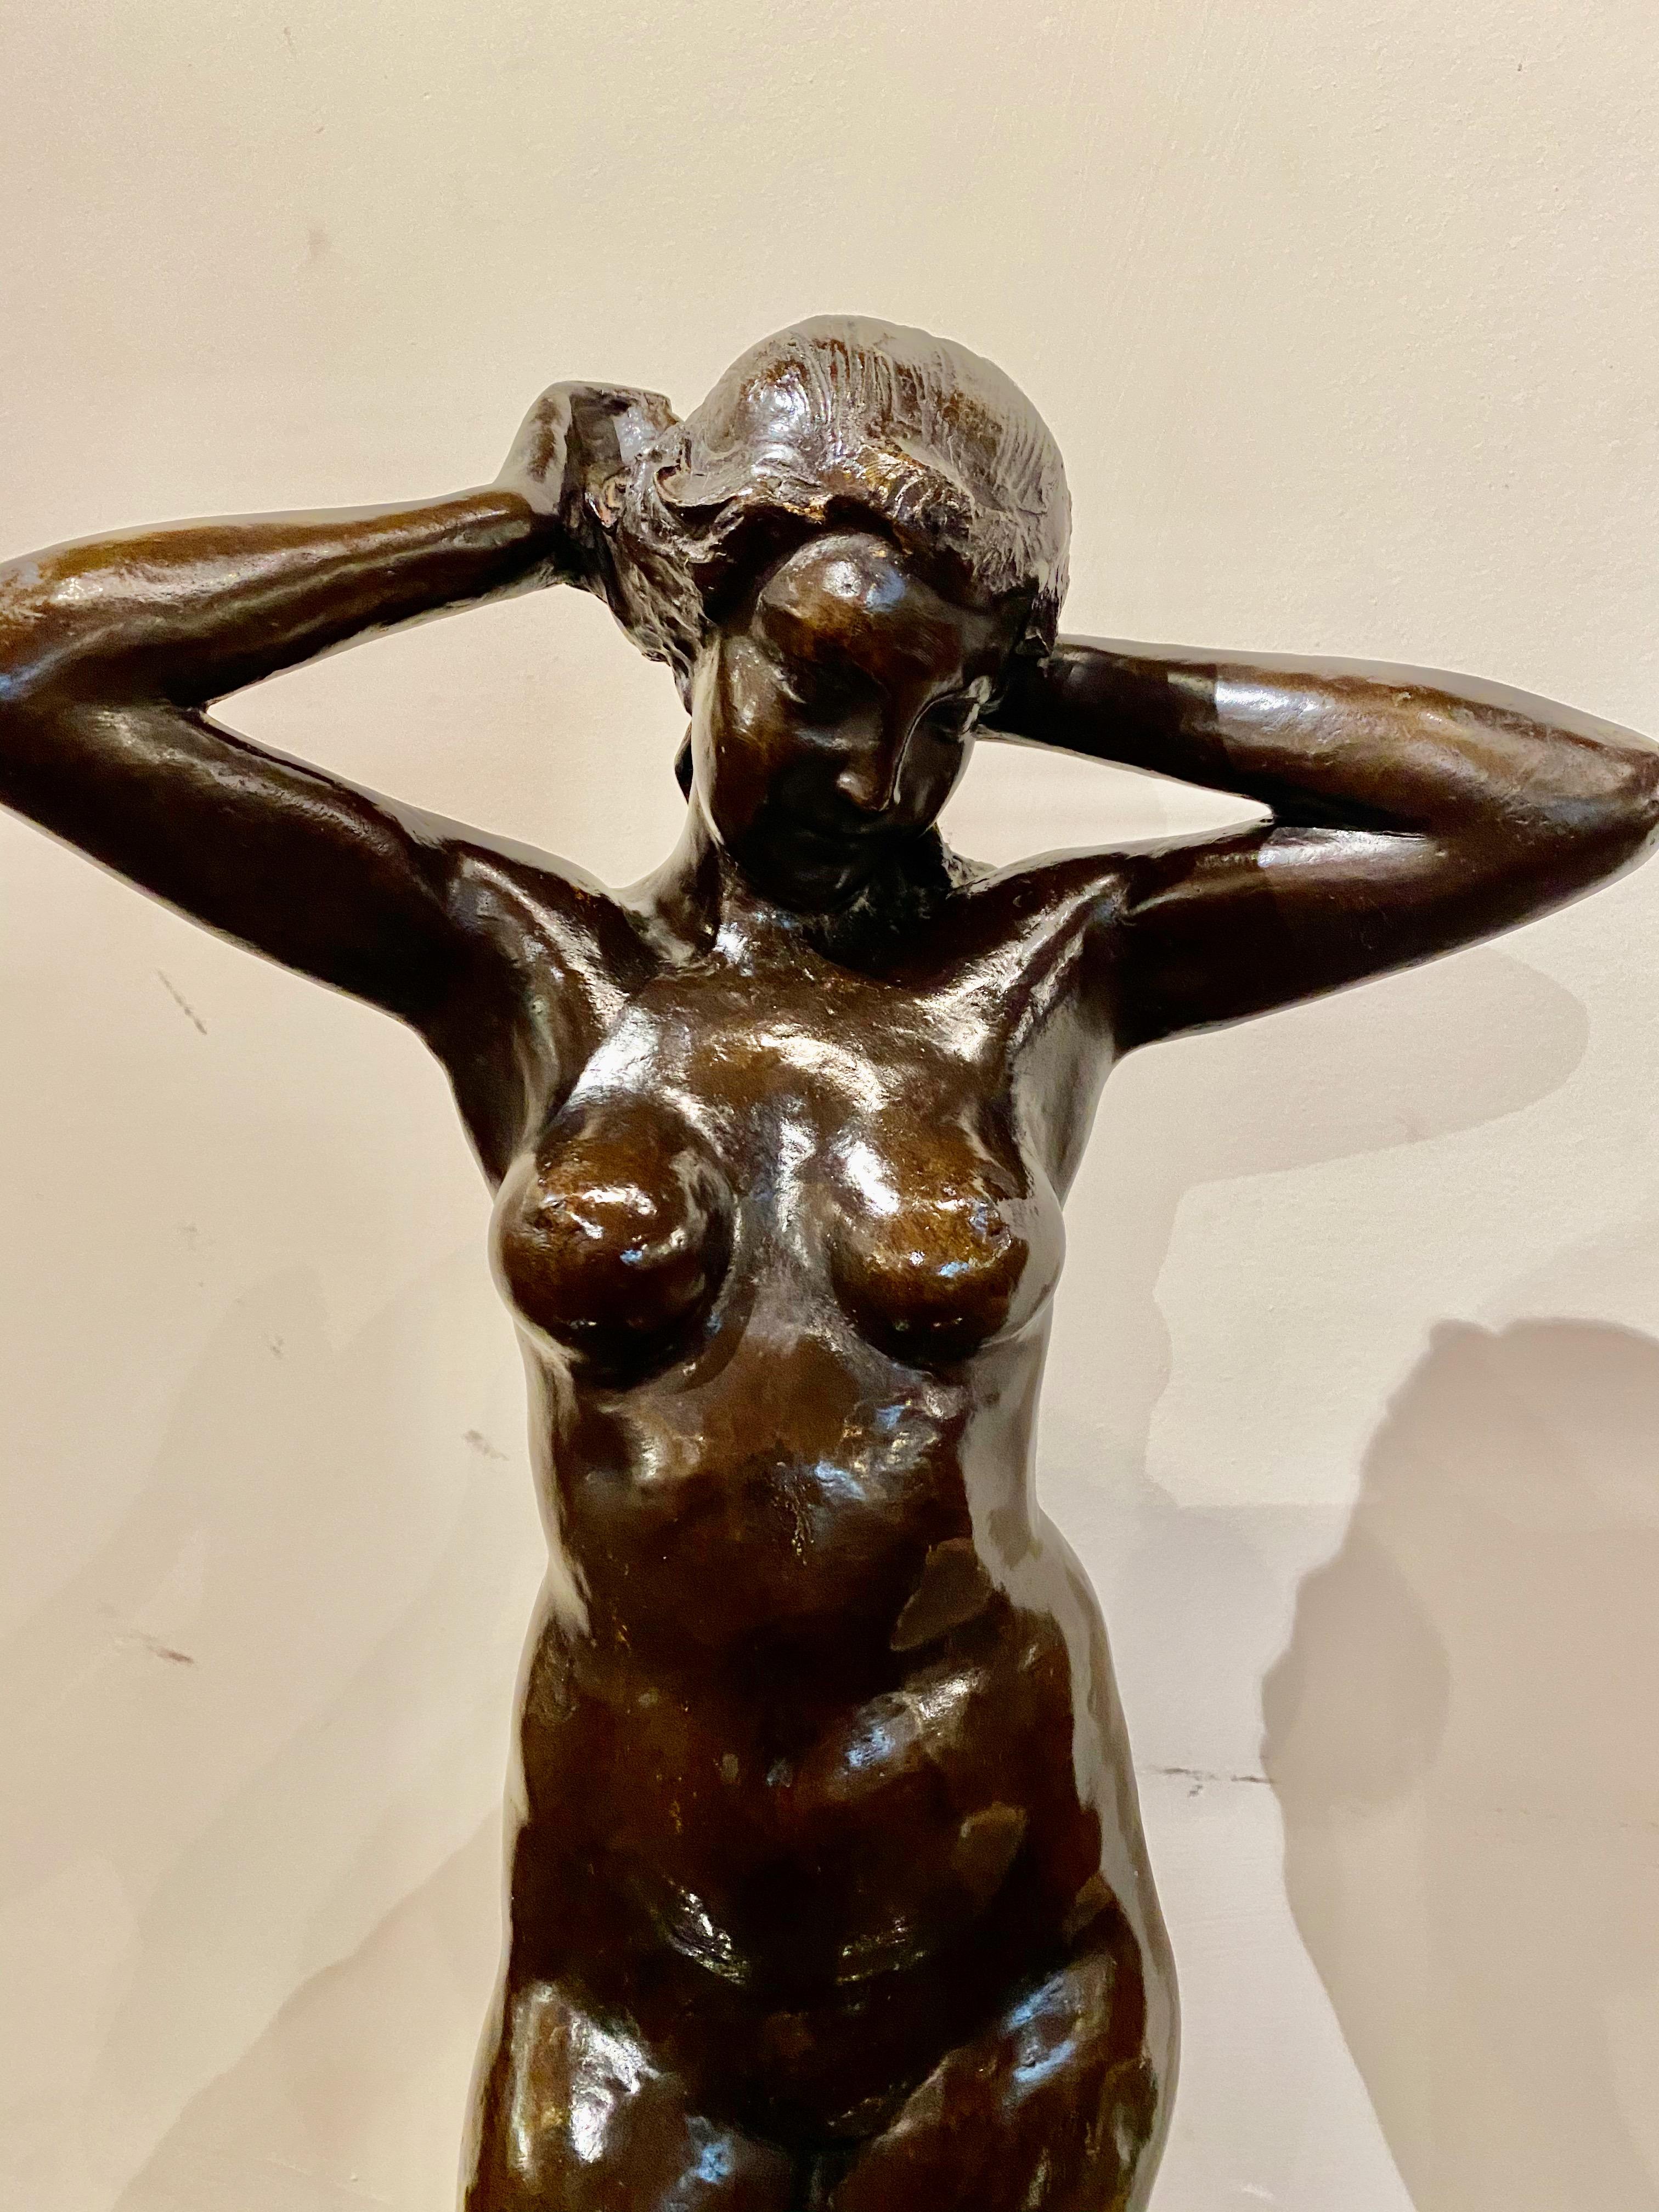 Bronzetänzerin, um 1930. Skulptur mit schwarzer Patina, von MARNIX D'HAVELOOSE (1885-1973). Diese klassisch interpretierte Nackttänzerin ist in einem eleganten Art-Déco-Stil gehalten. Die Unterschrift befindet sich auf dem Sockel. Dies ist eine